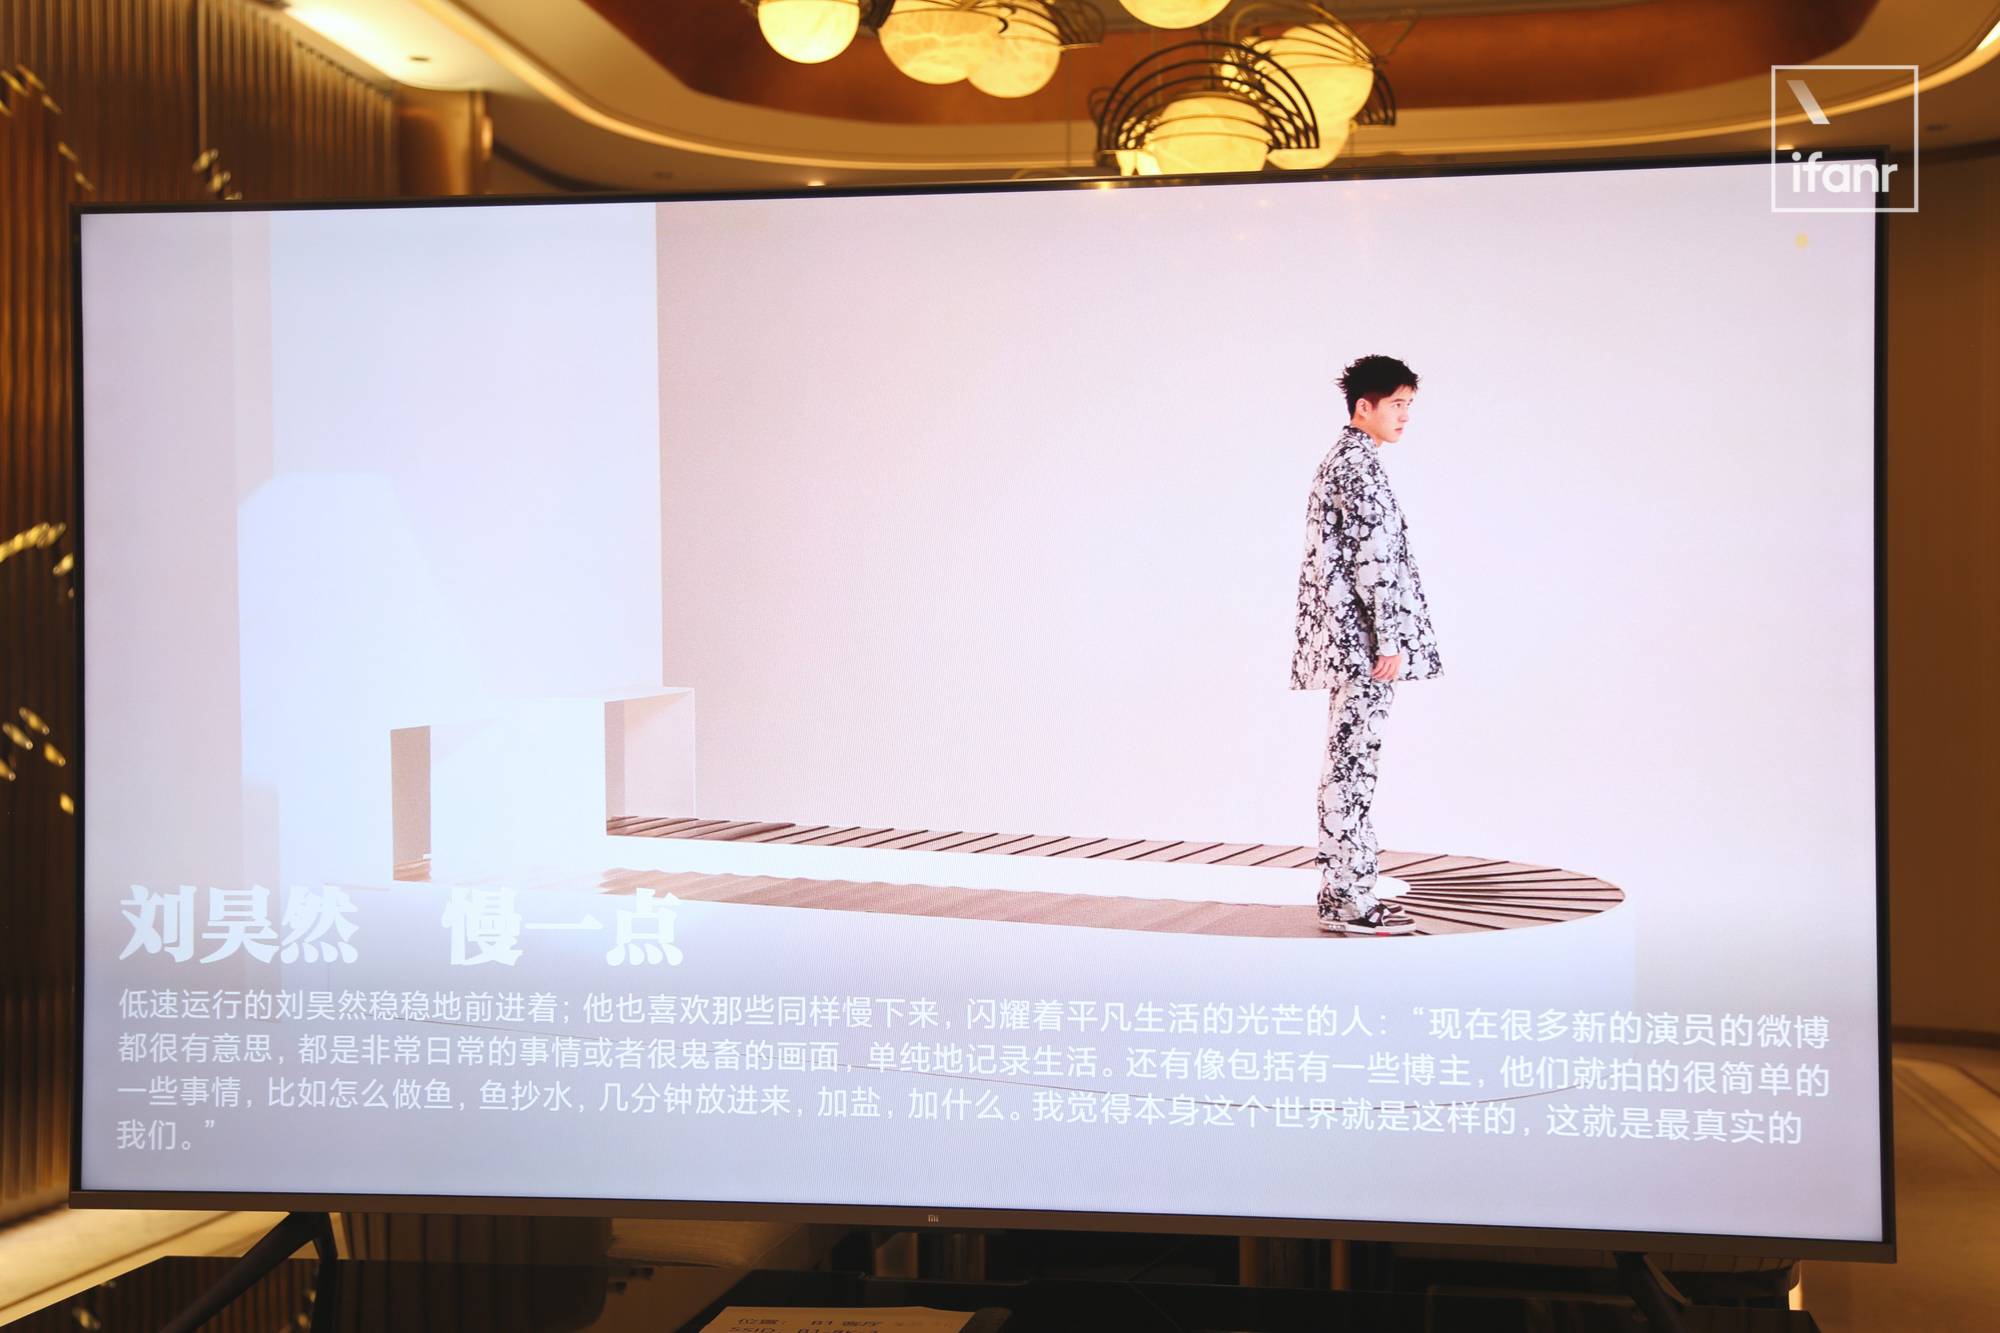 WechatIMG2257 5 - Ho provato la prima TV 8K di Xiaomi sul posto. Come si è comportata la “Super Cup” da 82 pollici?